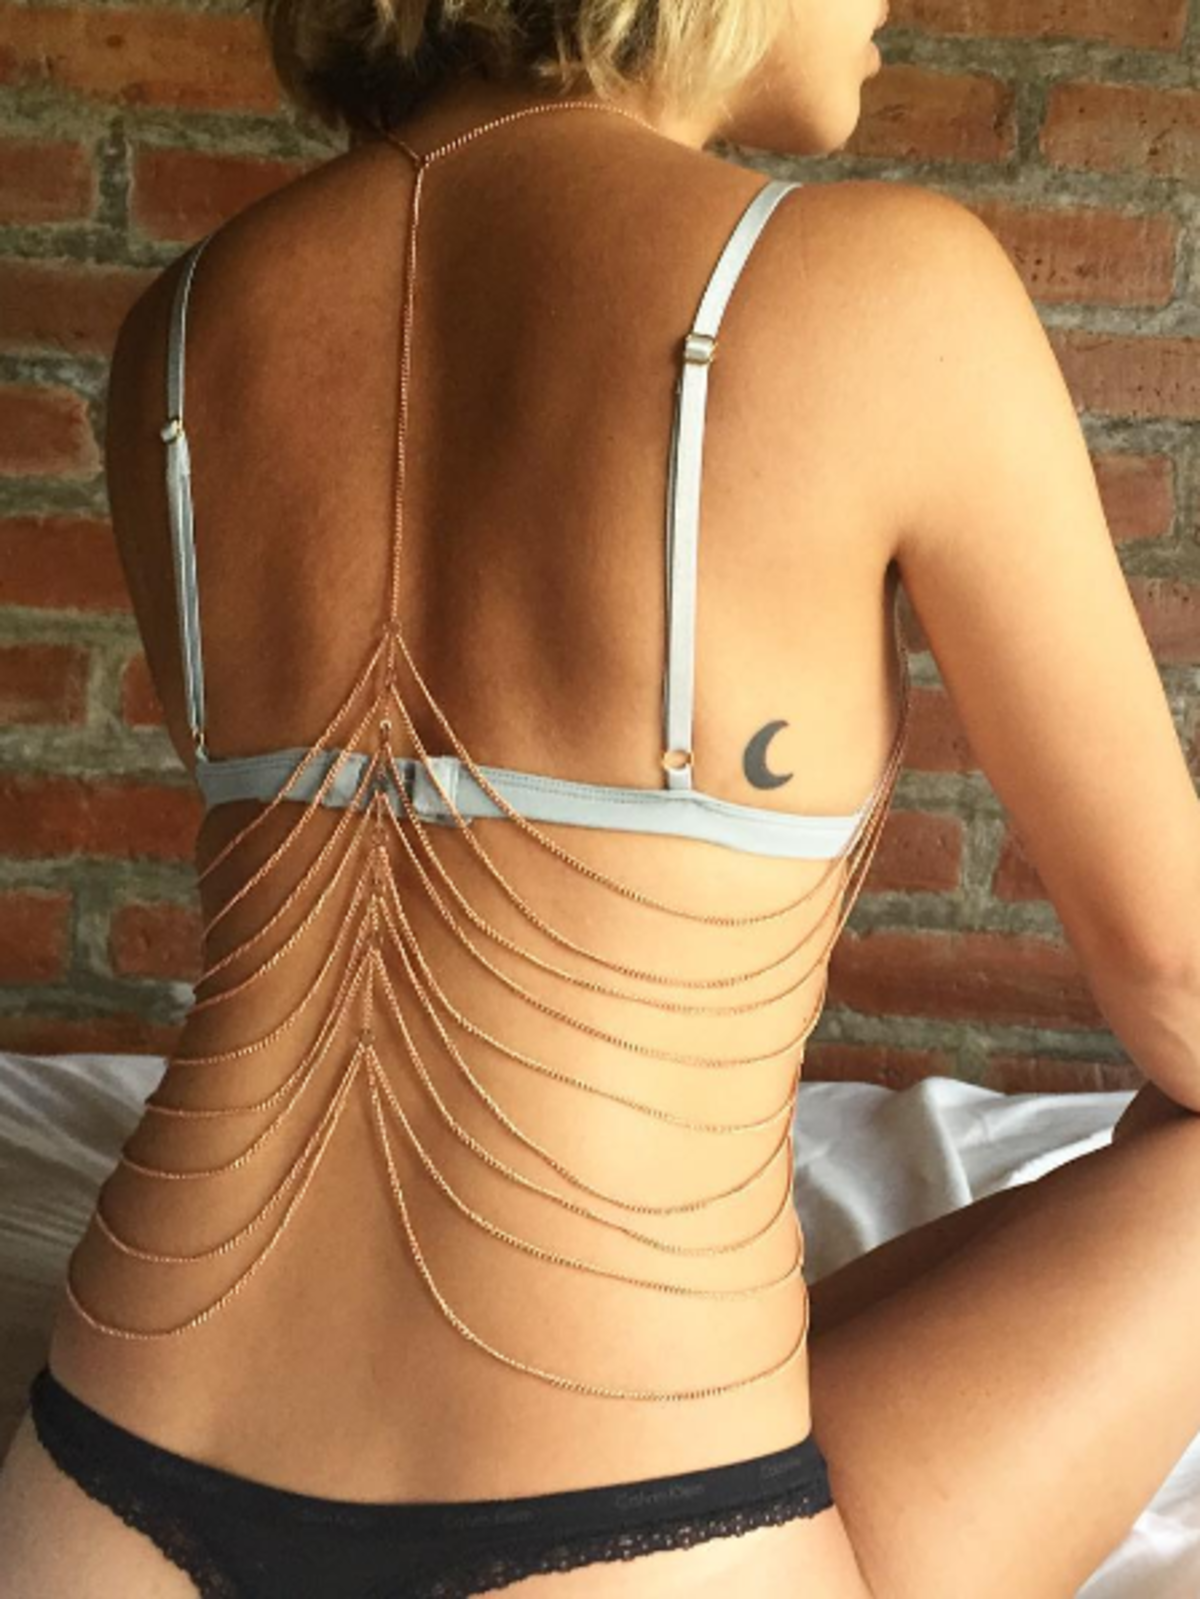 Body chain- biżuteria na ciało. Inspiracje z Instagrama